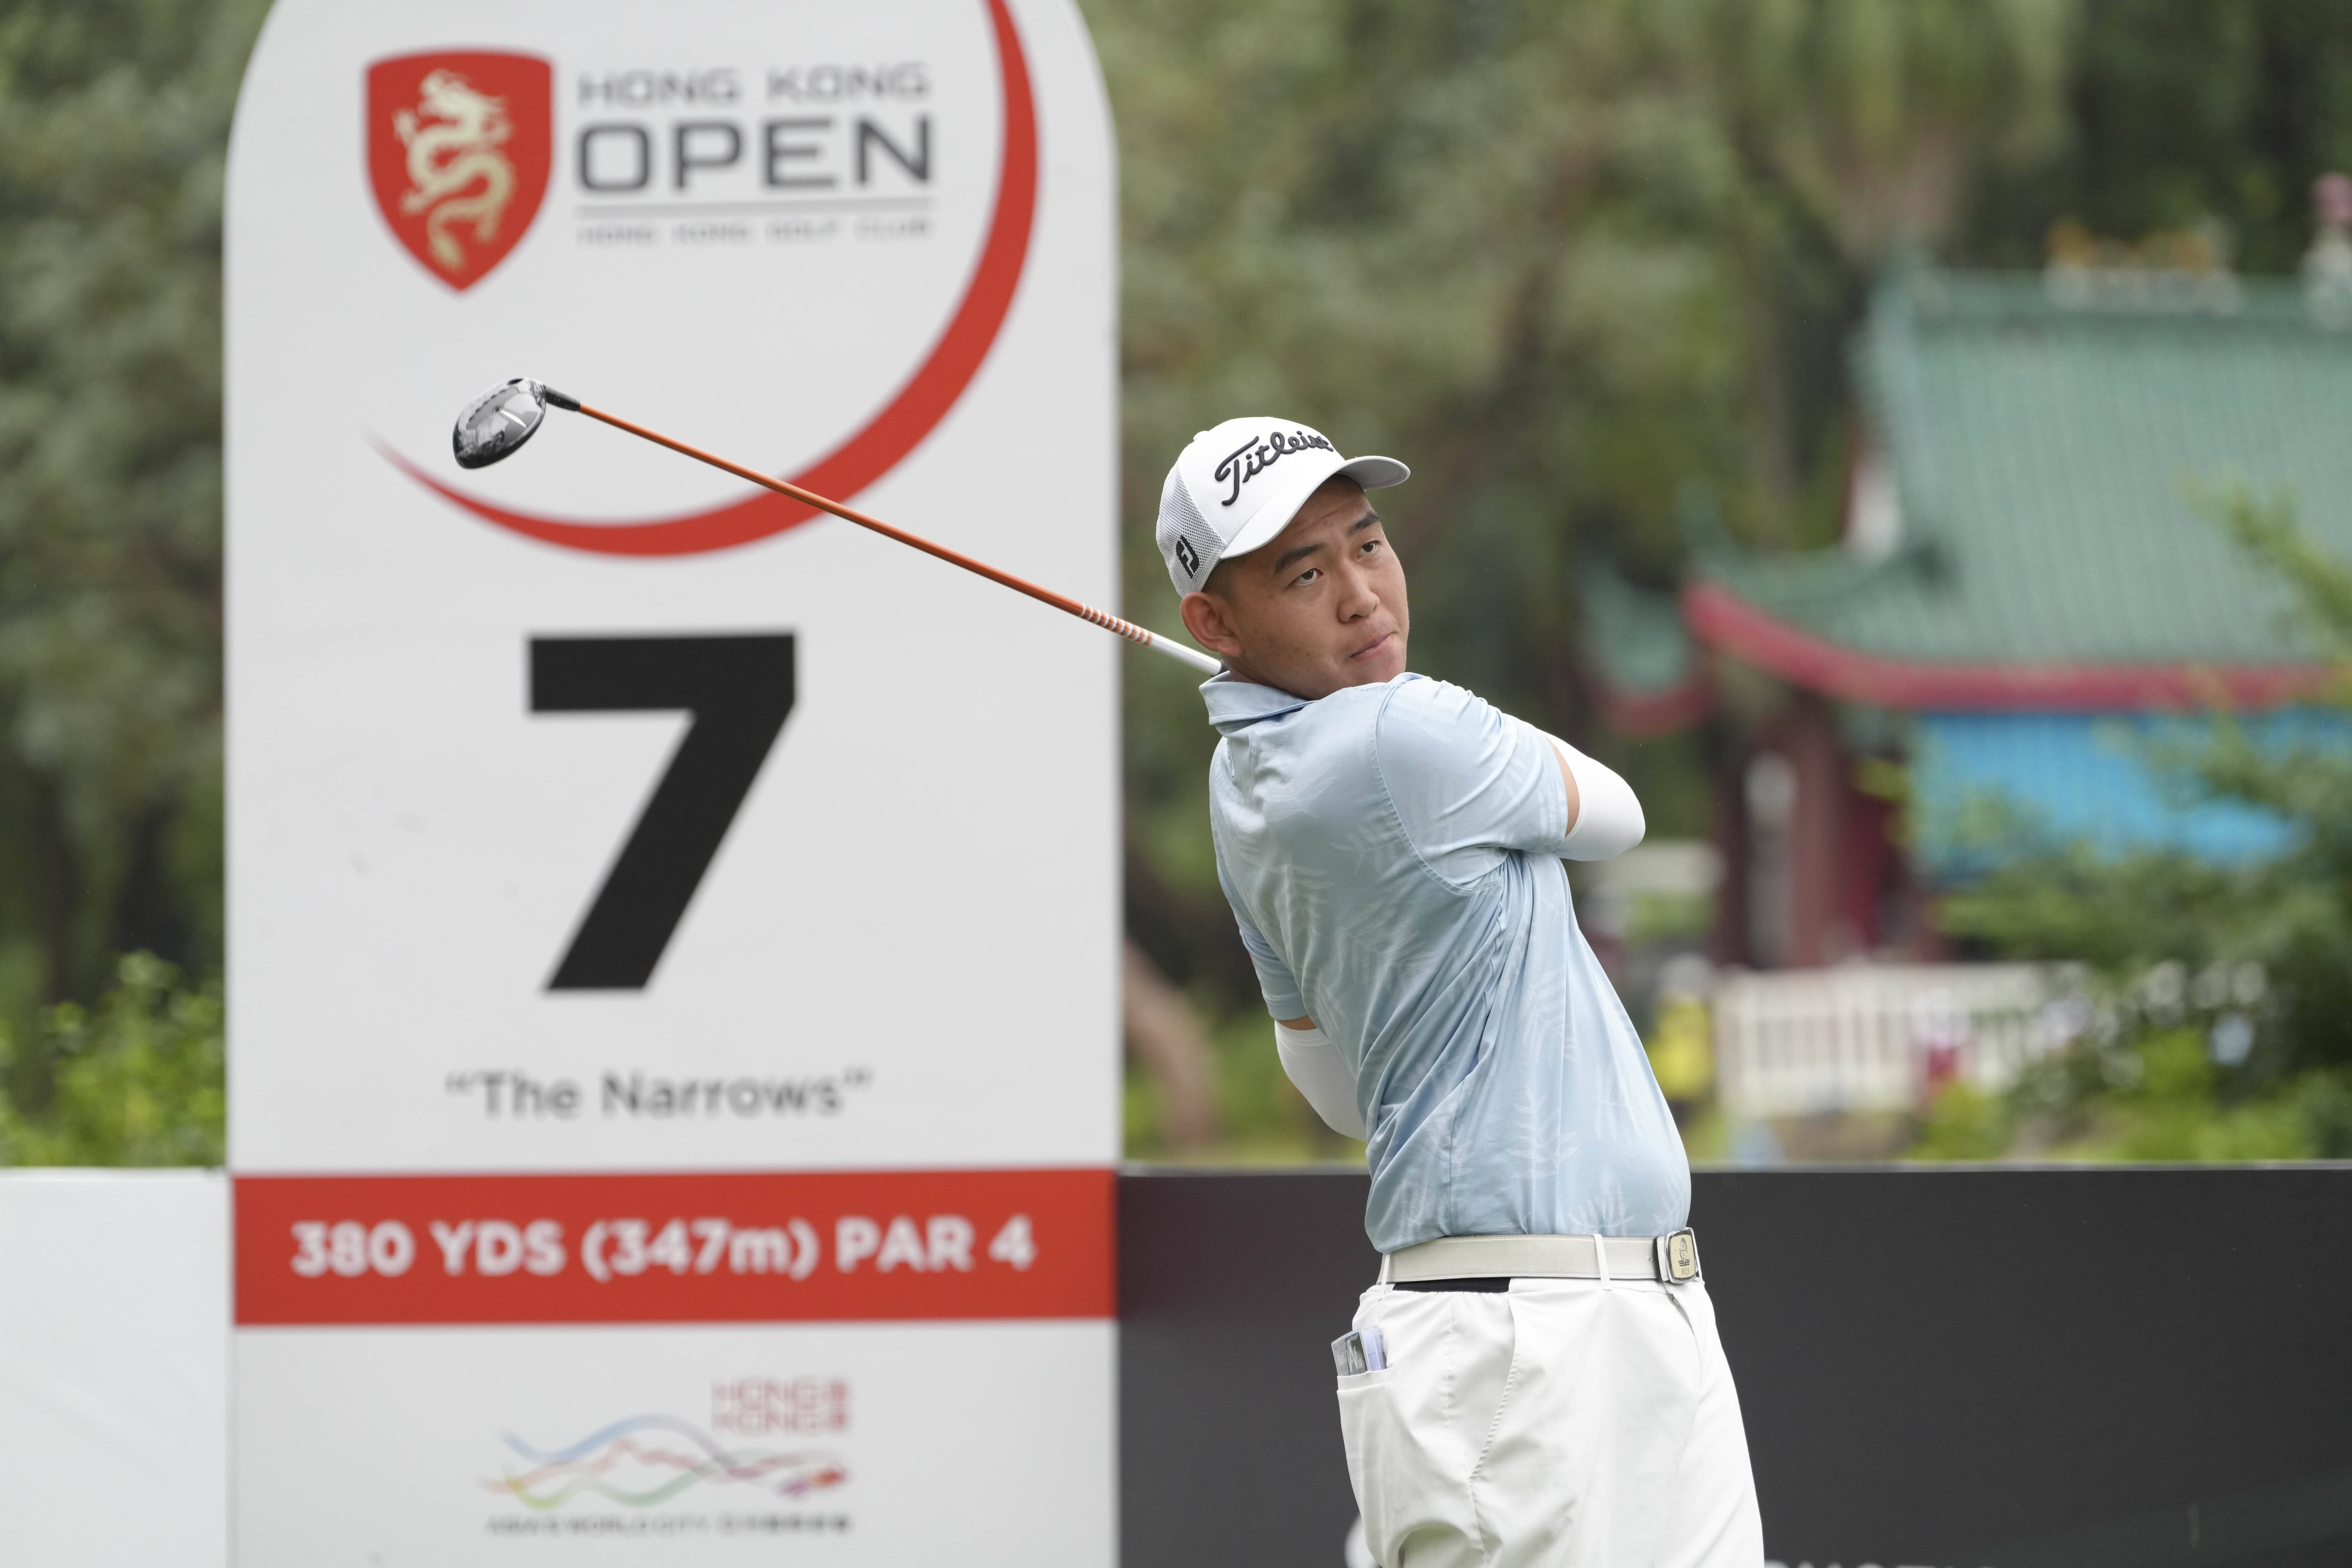 【168sports】香港高尔夫球公开赛移动日 澳洲球星史密夫与泰国球手孔瓦迈并列领先